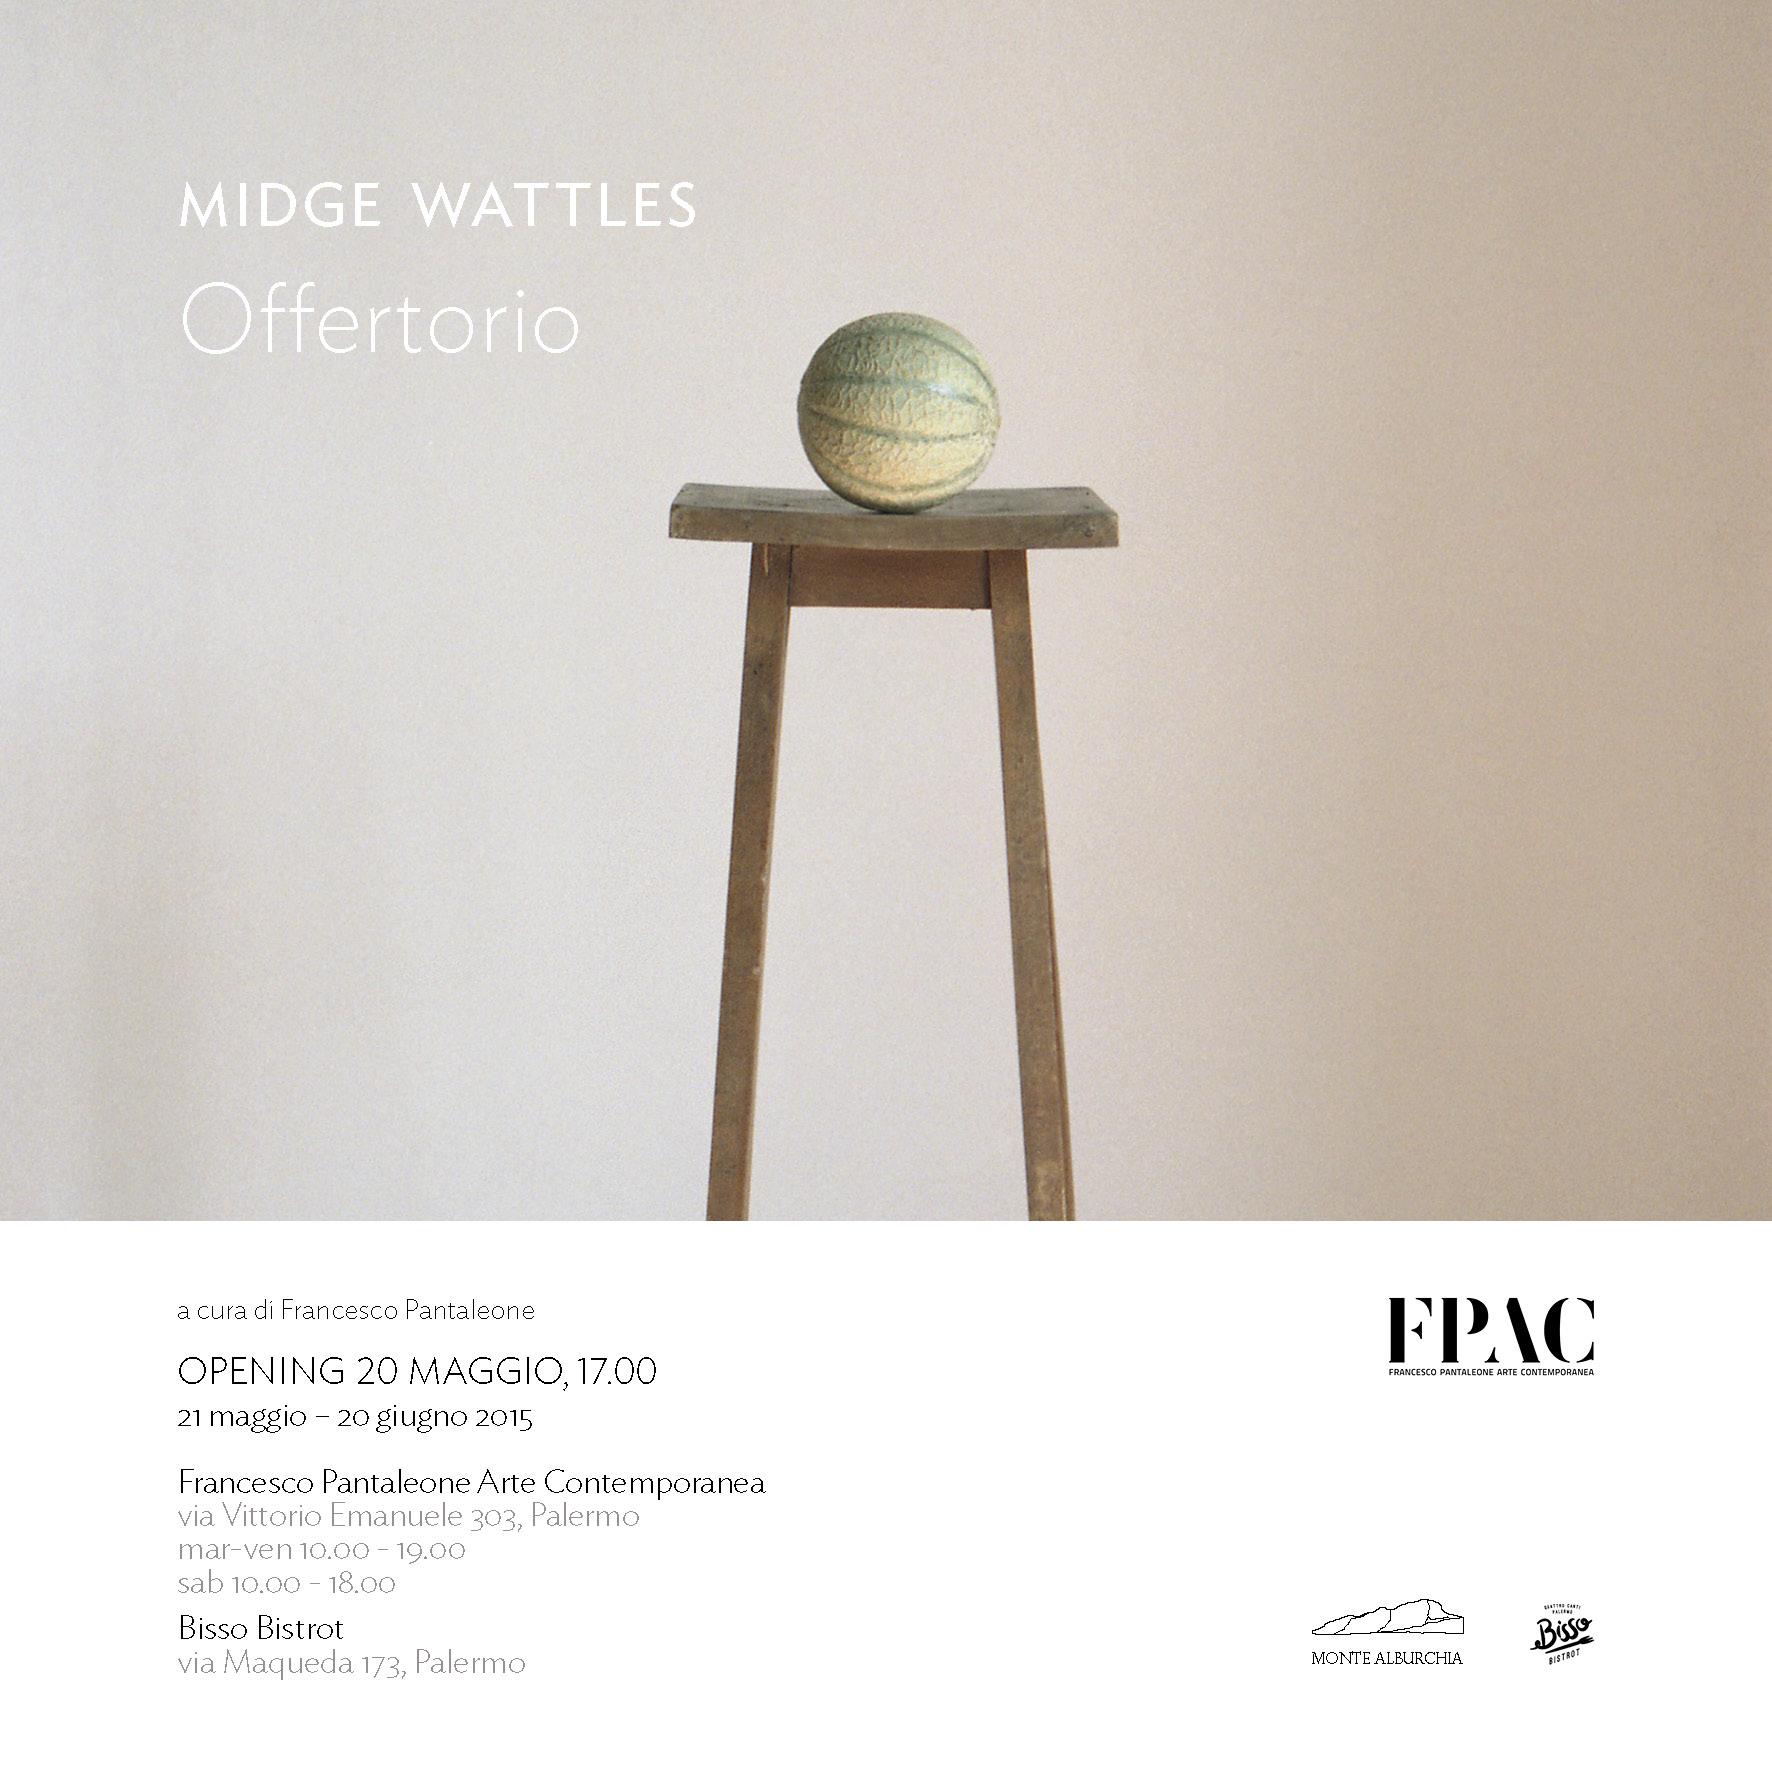 Midge Wattles - Offertorio